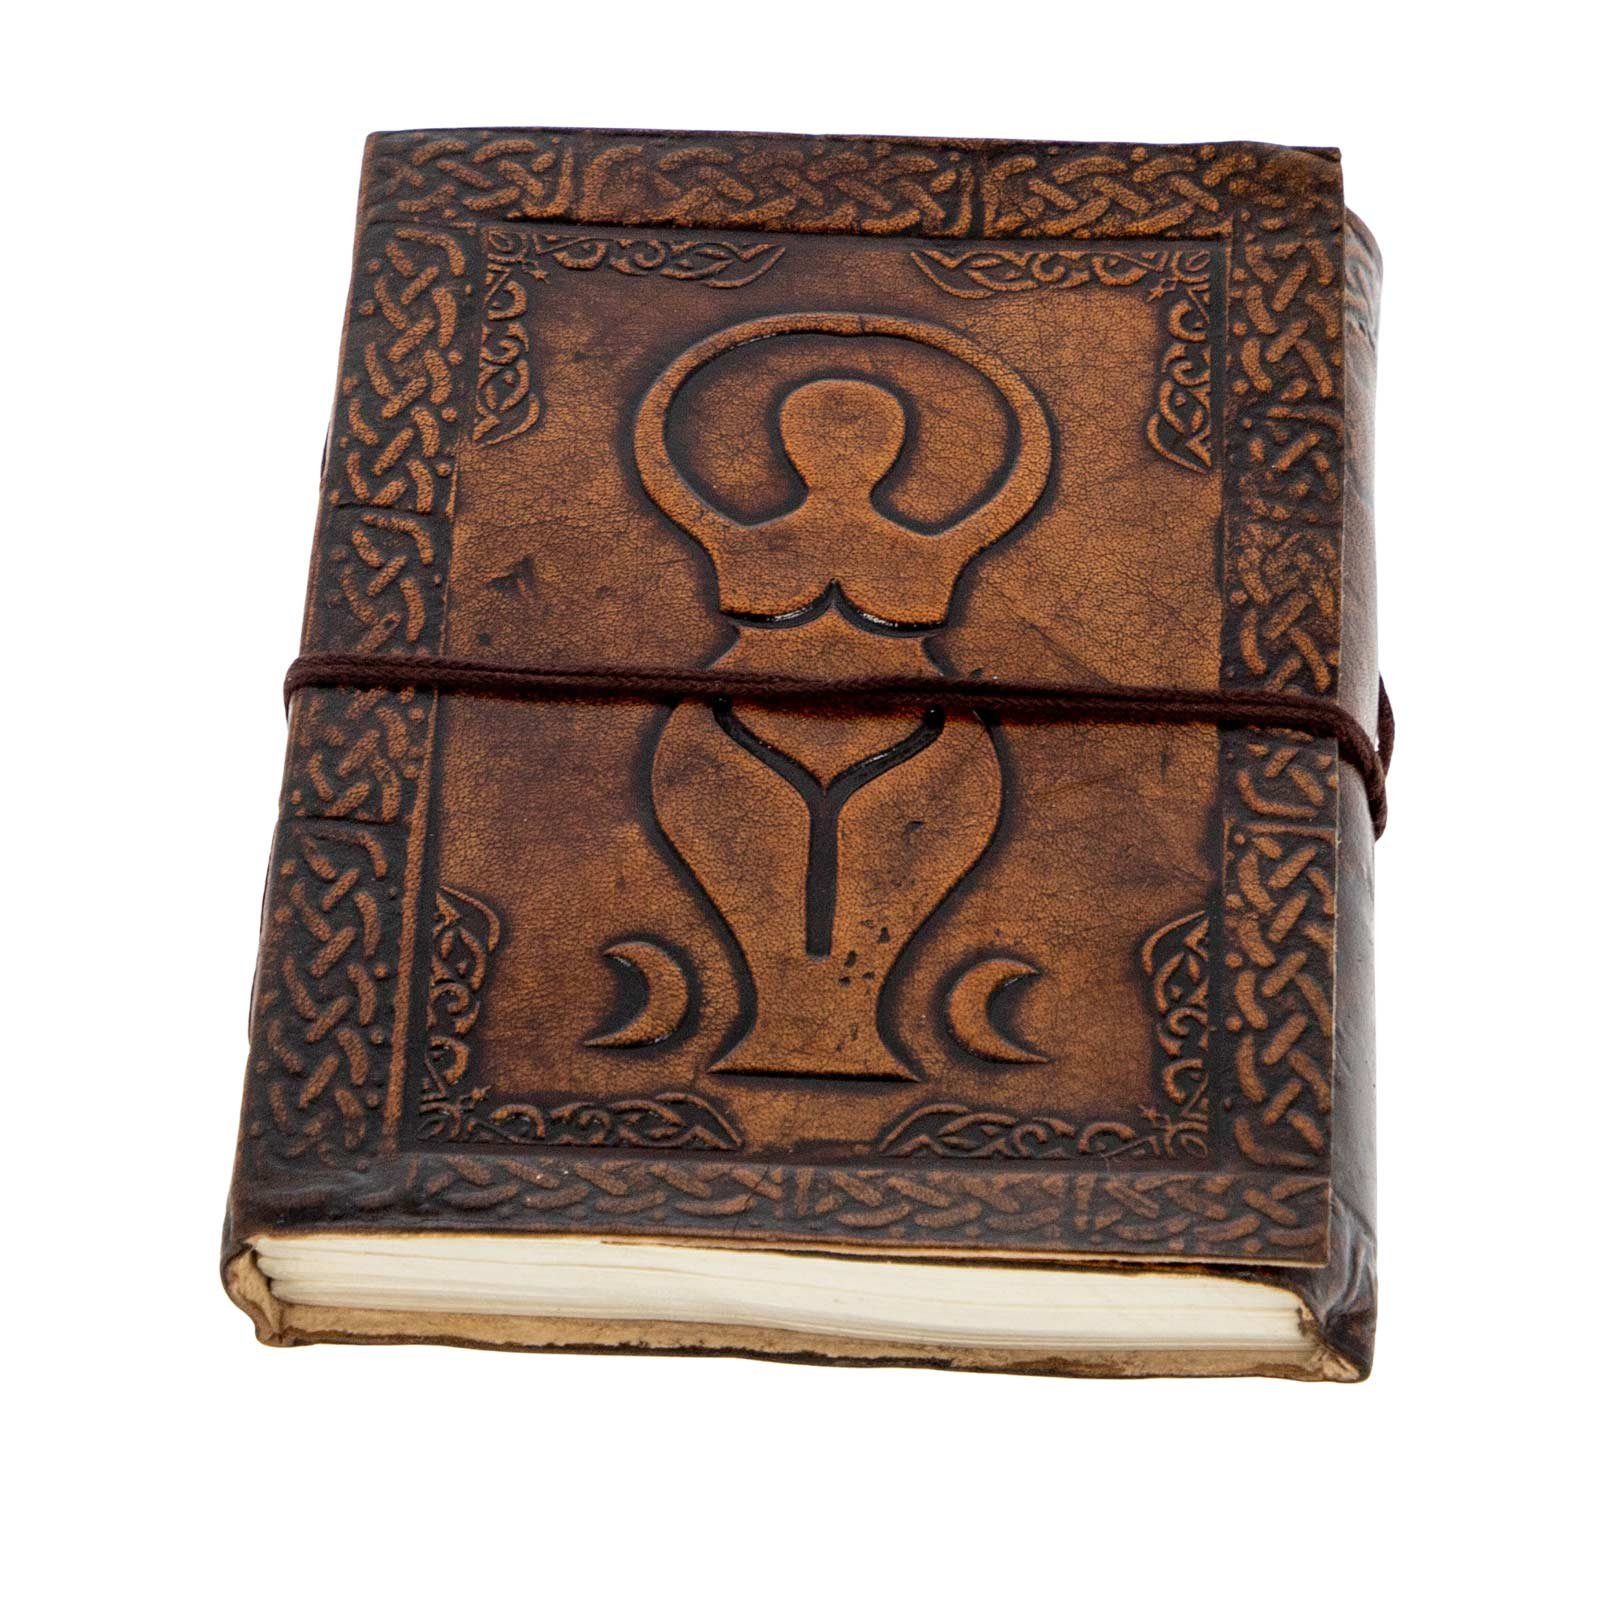 KUNST UND MAGIE Tagebuch Leder Tagebuch Notizbuch Wicca Große Göttin Mondgöttin 15x11,5cm